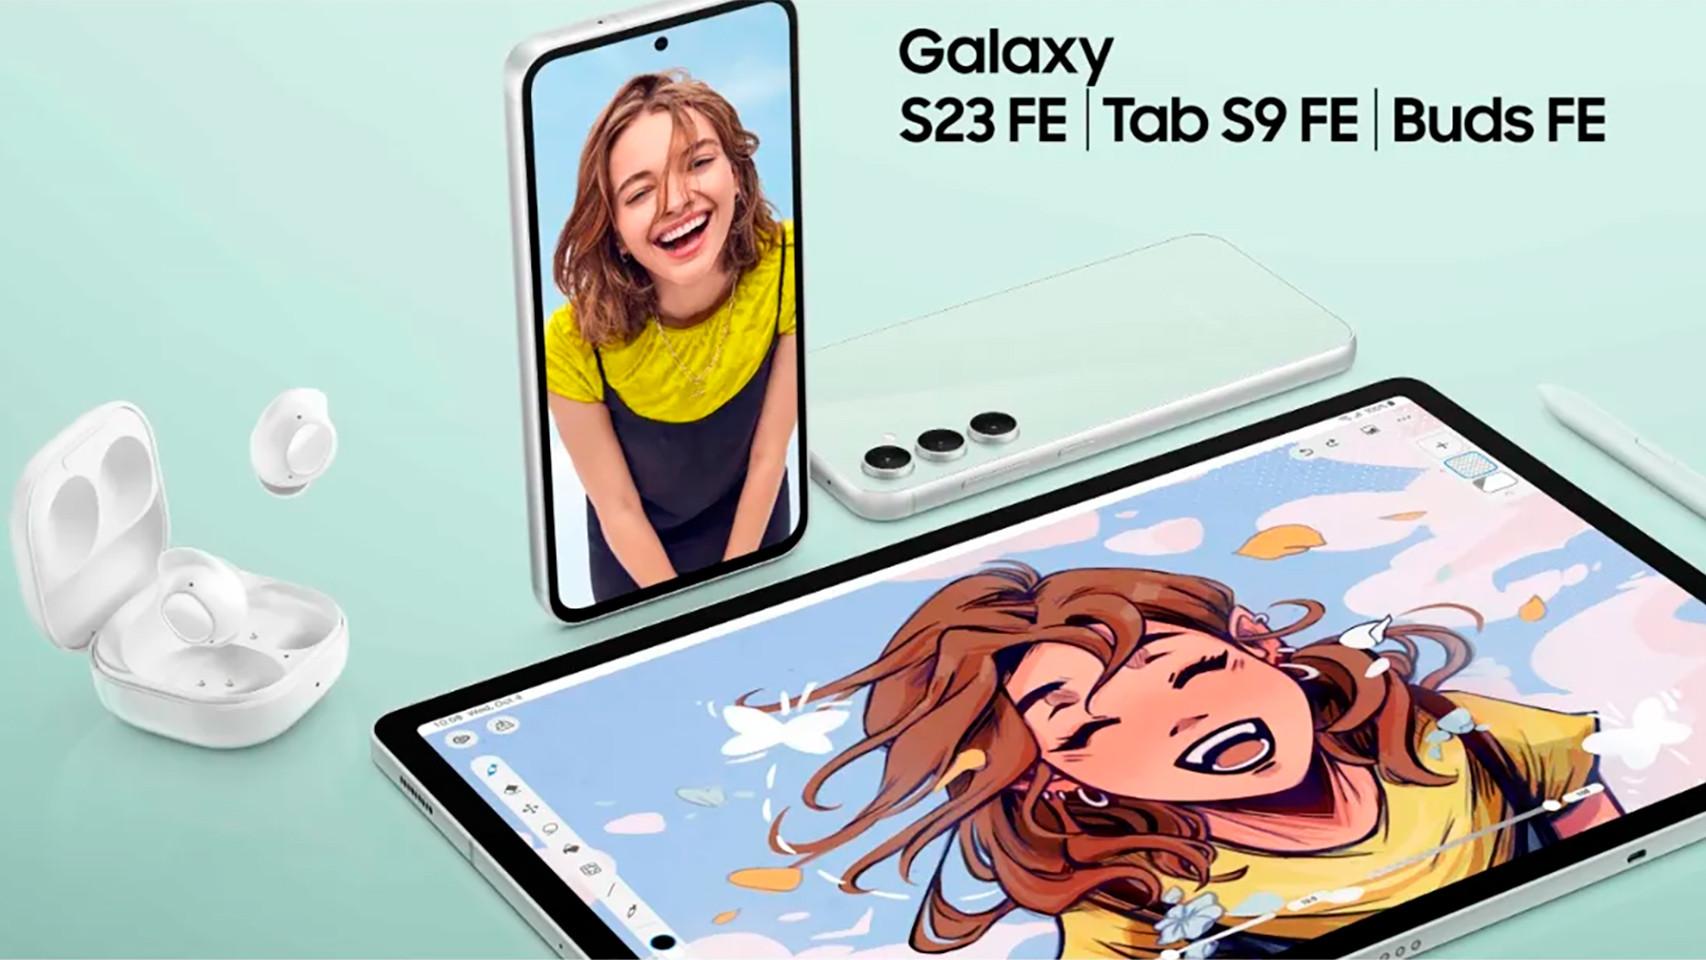 Samsung lanza los Galaxy S23 FE, Tab S9 FE y Buds FE: sus dispositivos  premium con mejor relación calidad-precio